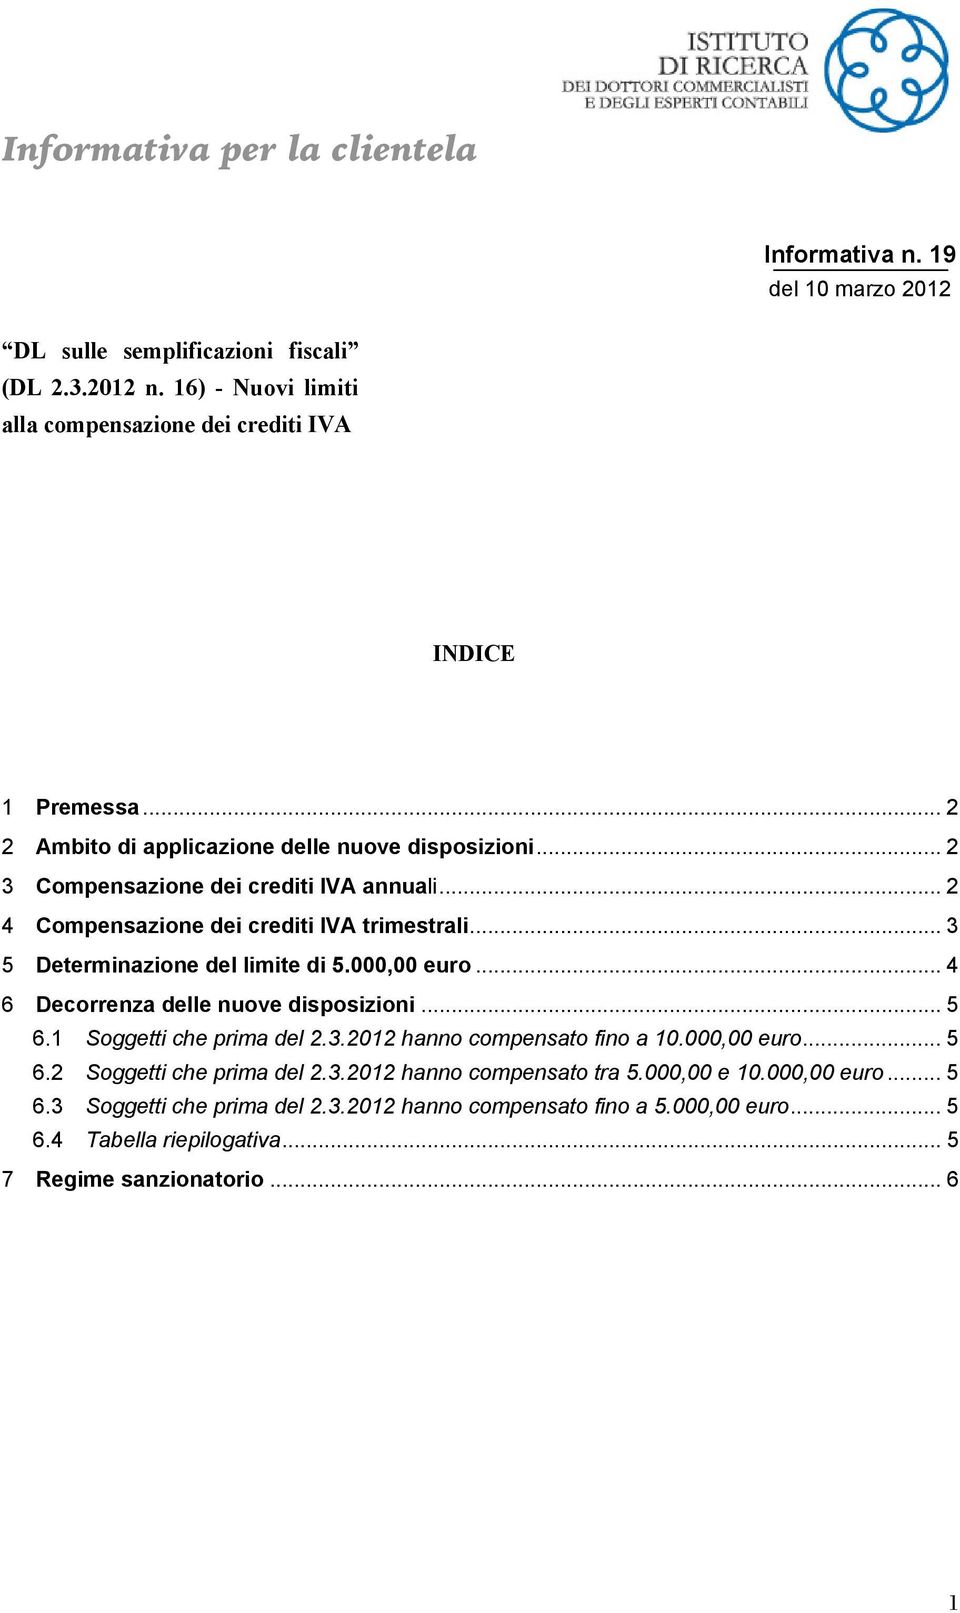 .. 2 4 Compensazione dei crediti IVA trimestrali... 3 5 Determinazione del limite di 5.000,00 euro... 4 6 Decorrenza delle nuove disposizioni... 5 6.1 Soggetti che prima del 2.3.2012 hanno compensato fino a 10.